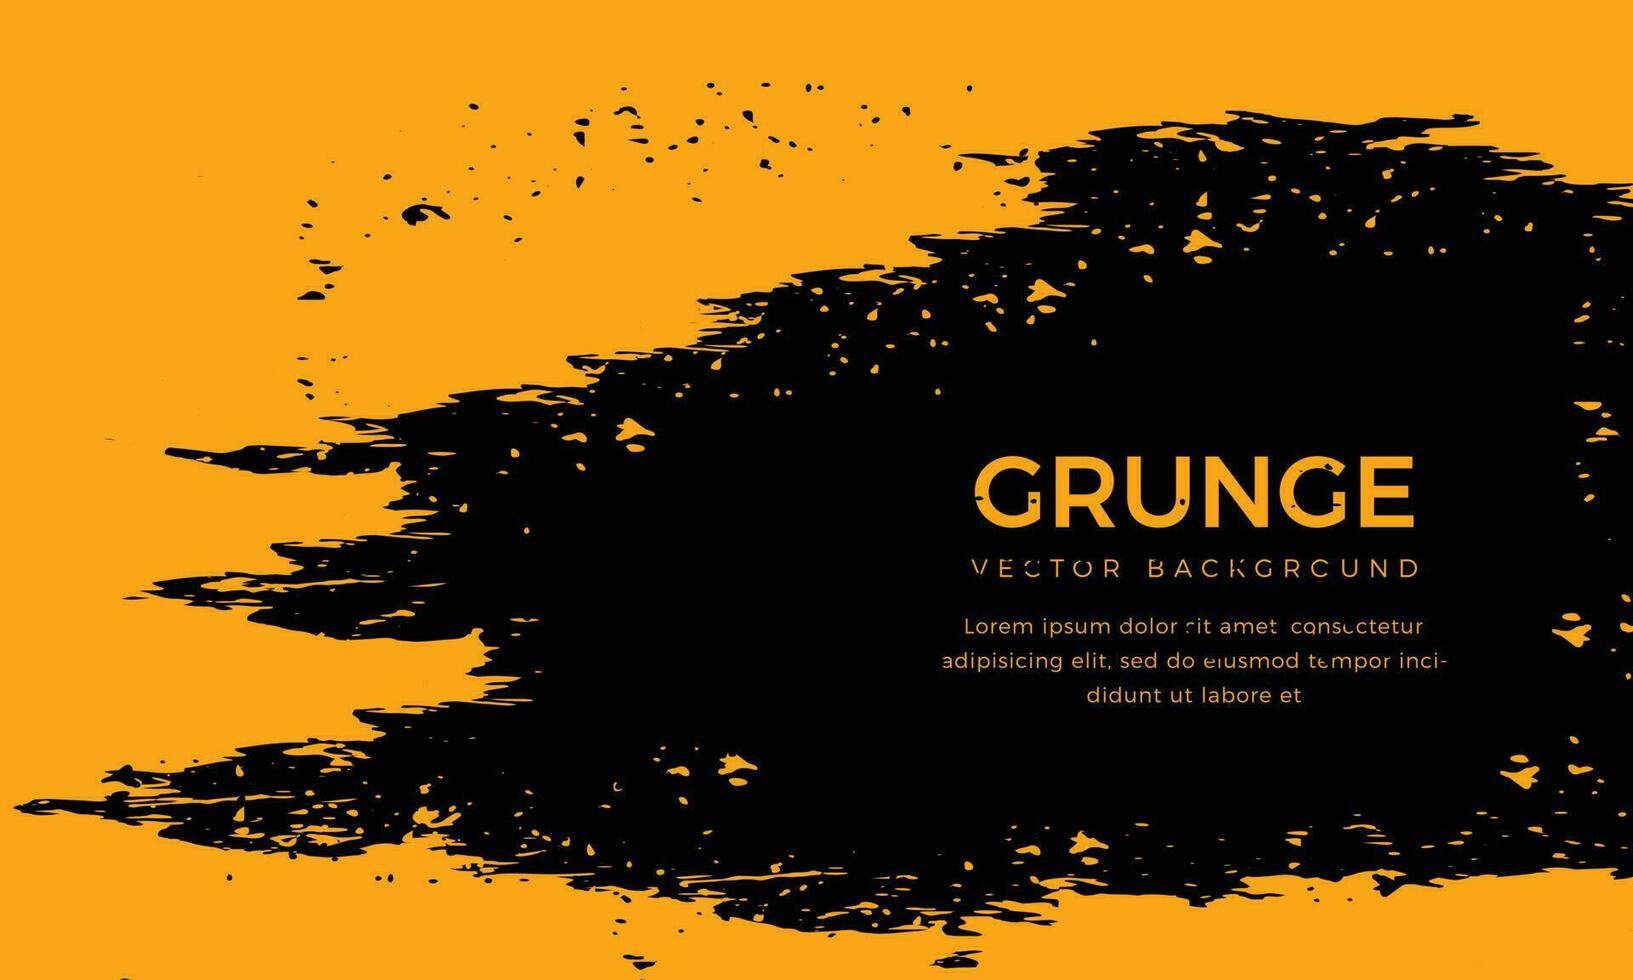 abstrakt schwarz und Orange Hintergrund mit Grunge Textur. bunt Hintergrund Design. Orange und schwarz Vektor Grunge texturiert Hintergrund